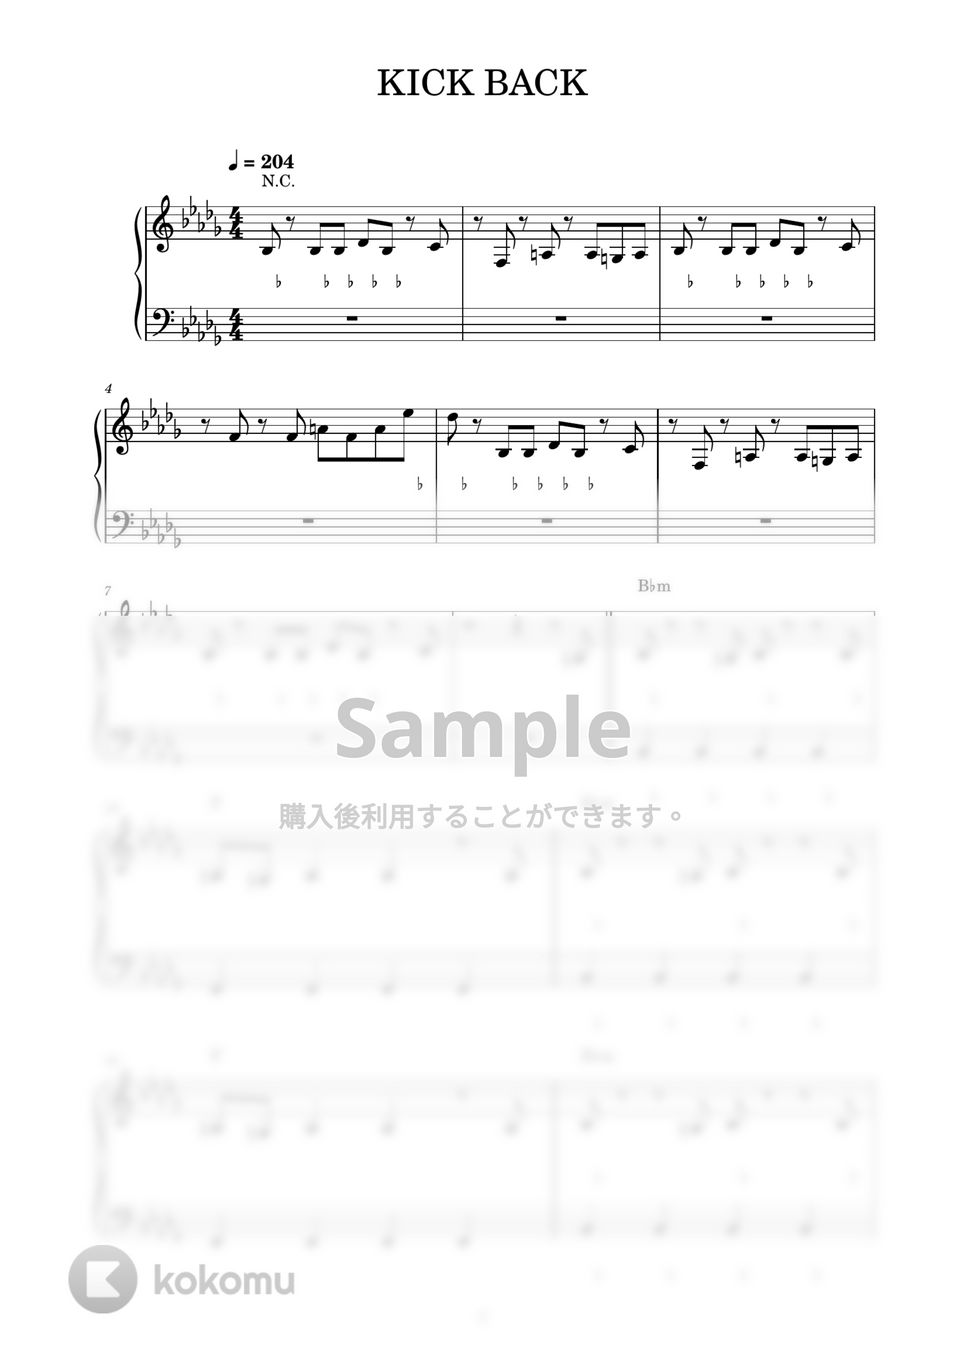 米津玄師 - KICK BACK (ピアノ楽譜 / かんたん両手 / 歌詞付き / ドレミ付き / 初心者向き) by piano.tokyo